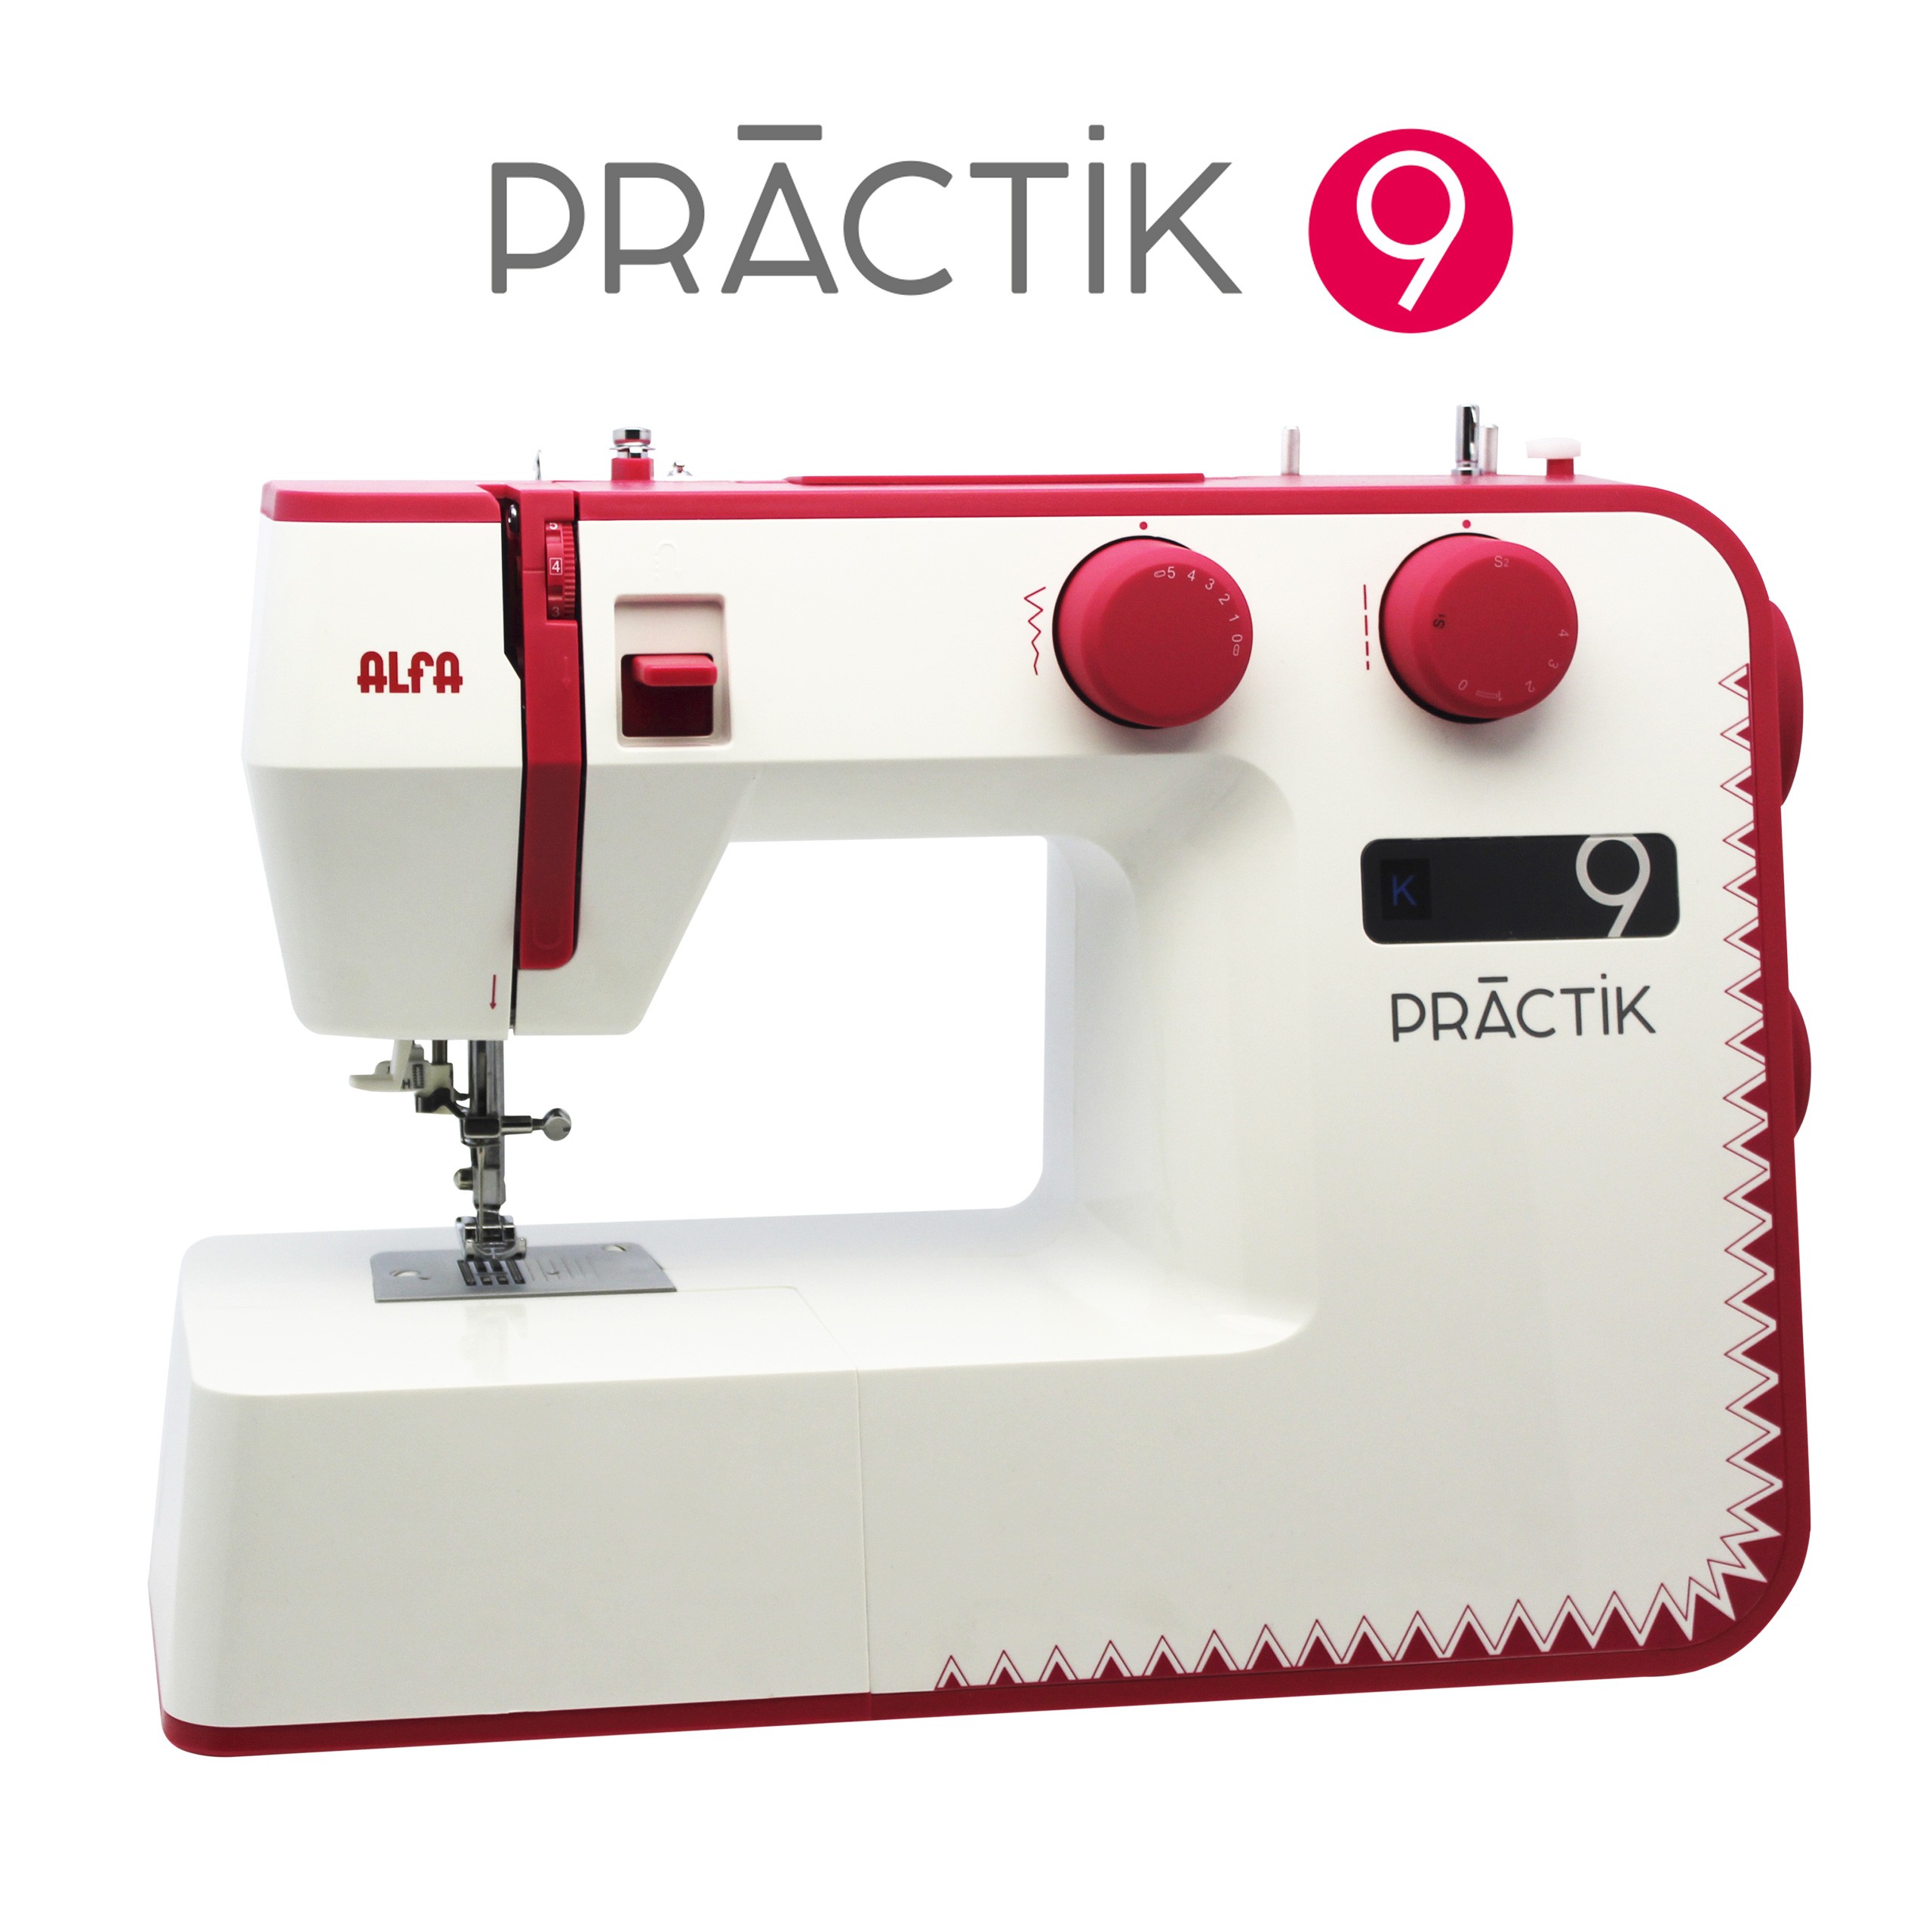 Alfa PRACTIK 9 Máquina coser